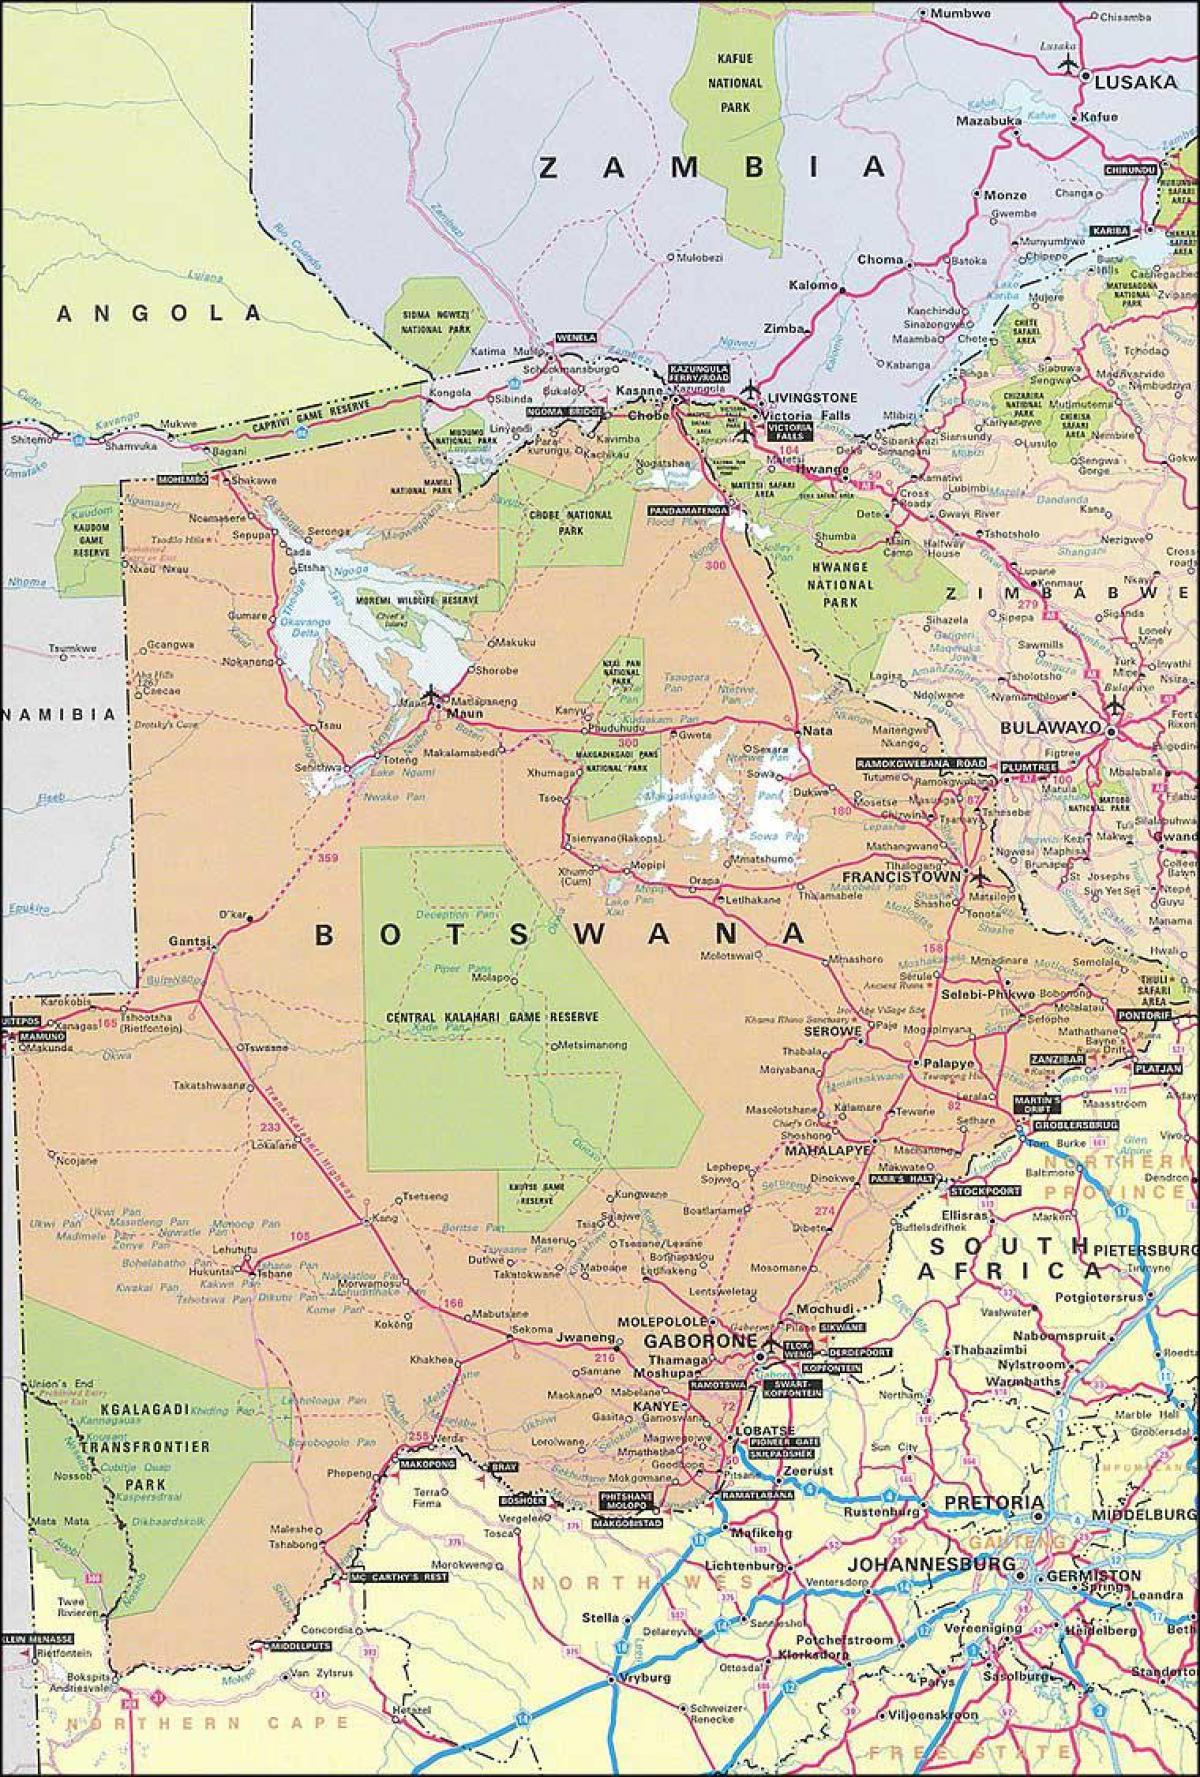 kort over Botswana